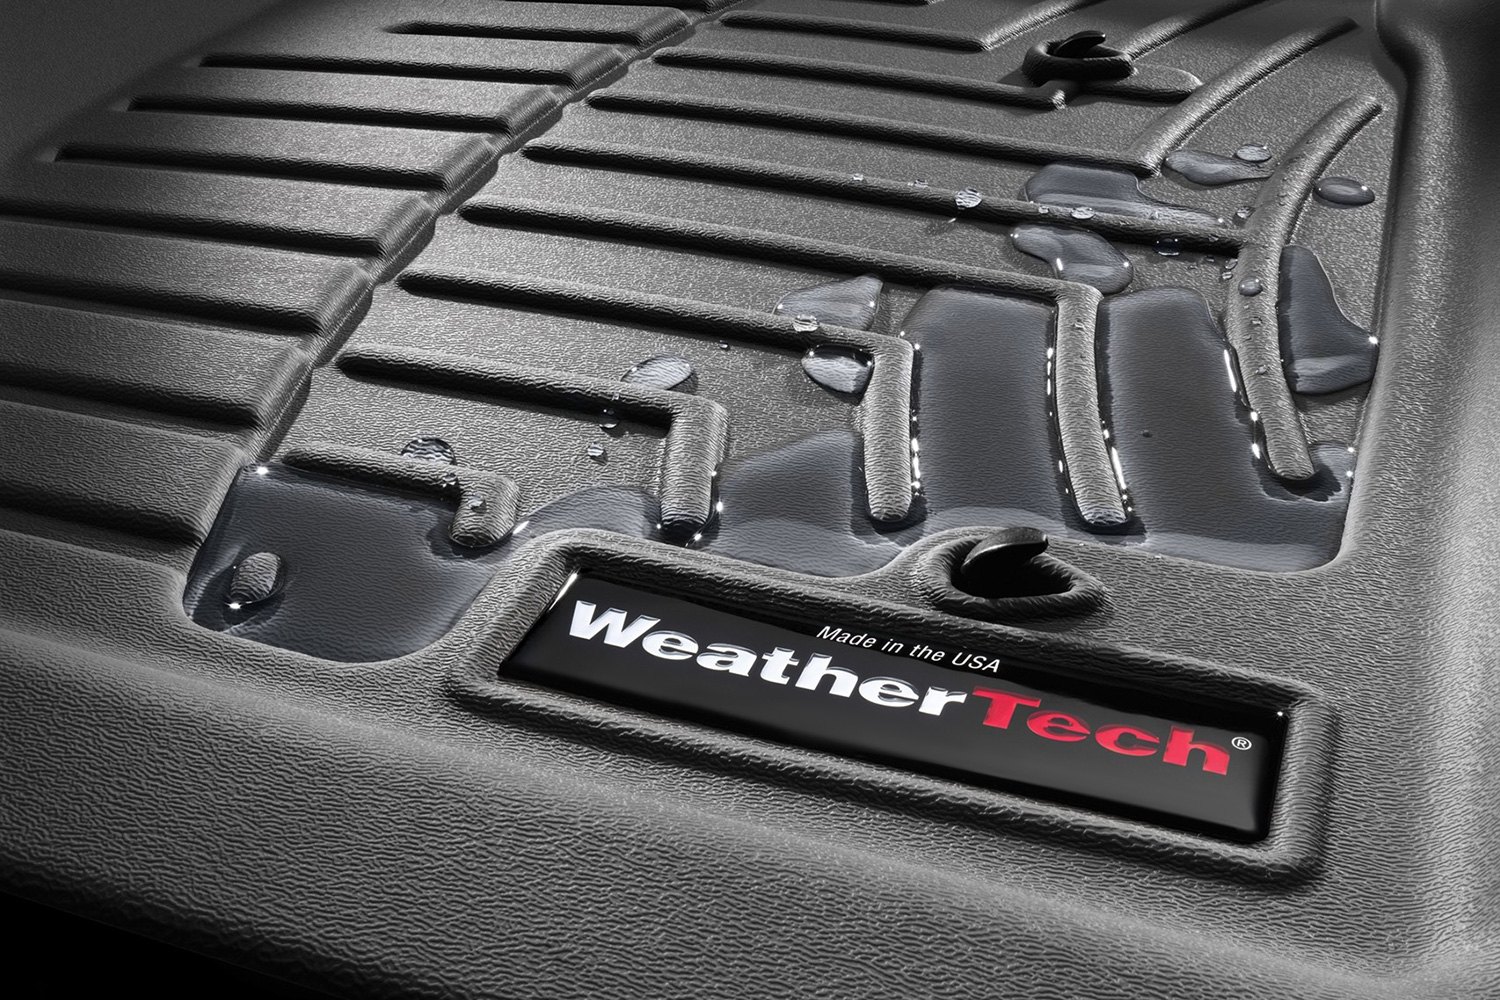 WeatherTech Floor Mats - #1 Best Selling Brand